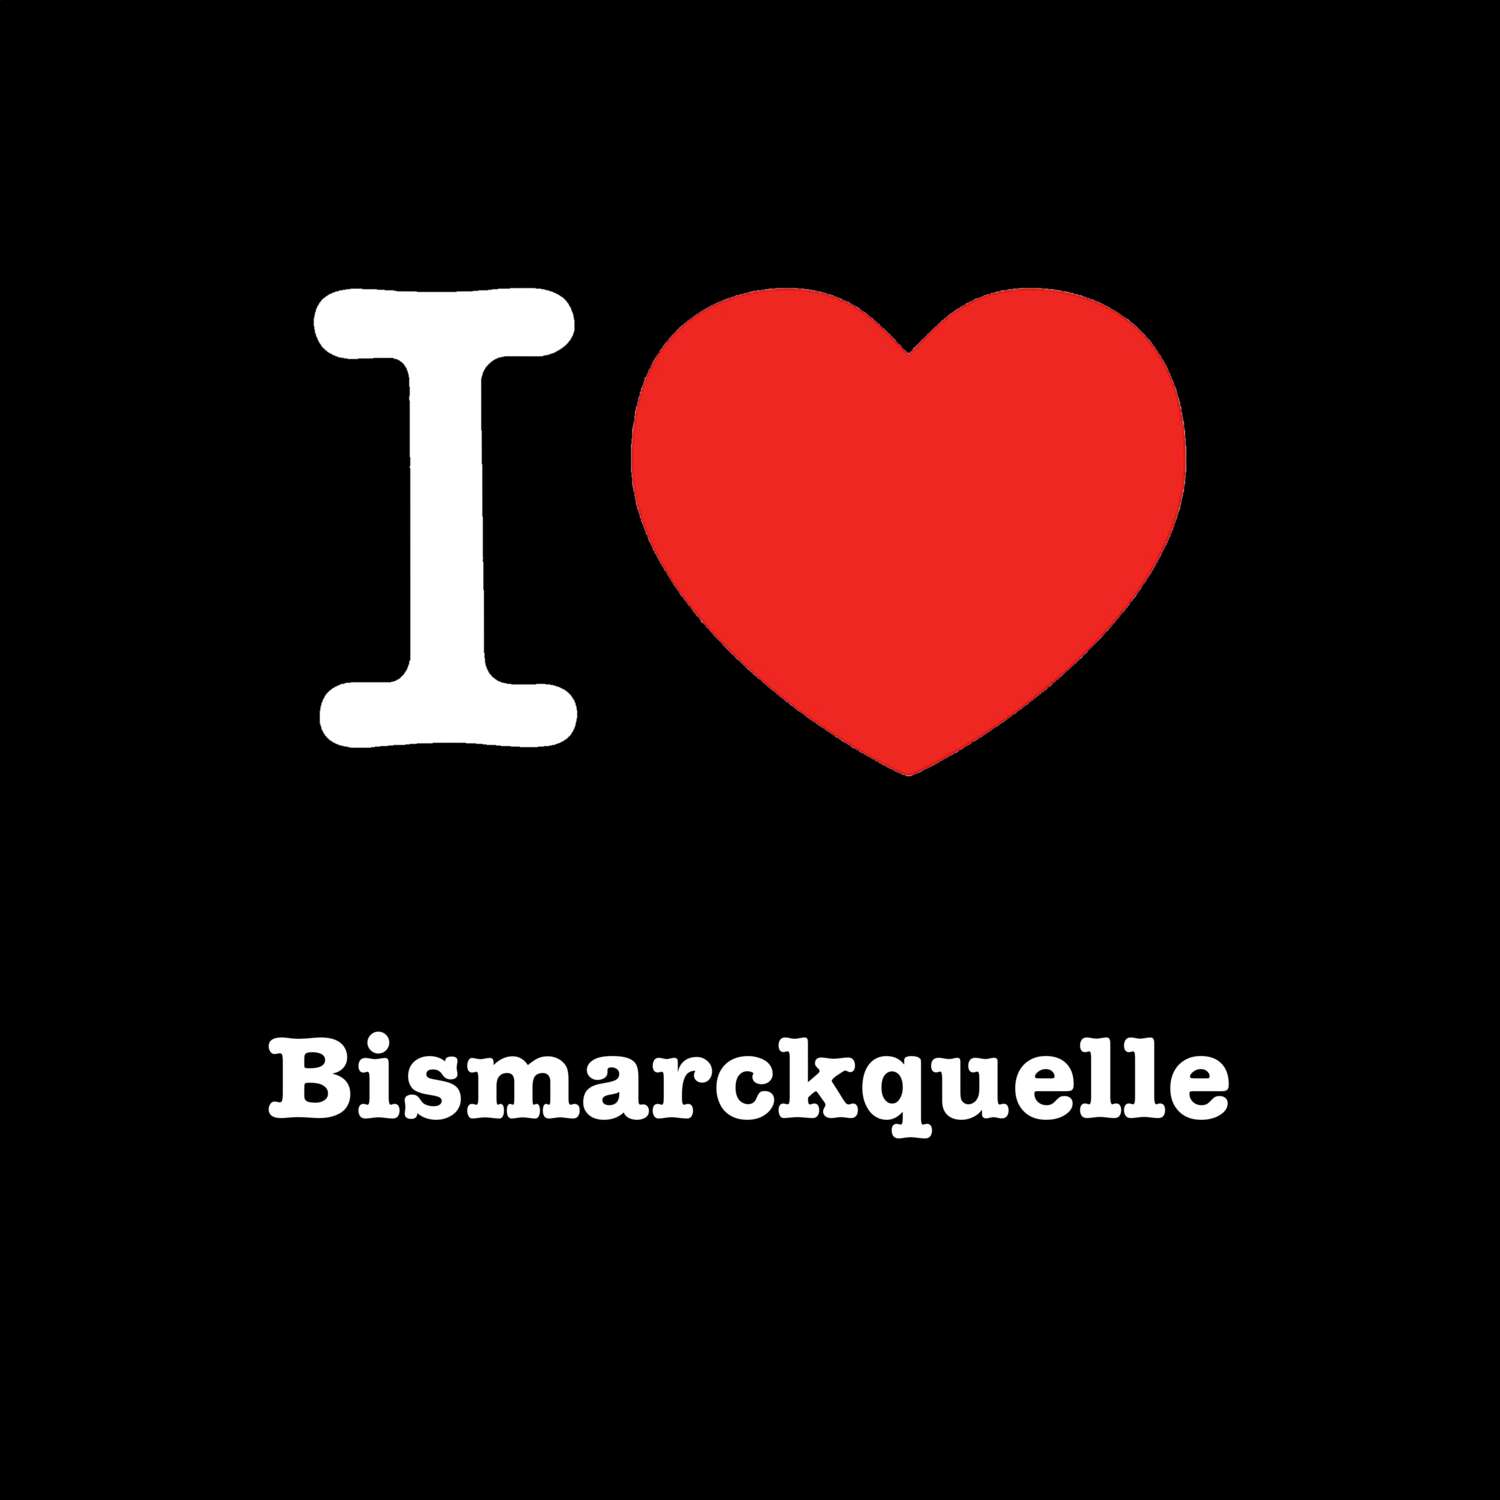 Bismarckquelle T-Shirt »I love«